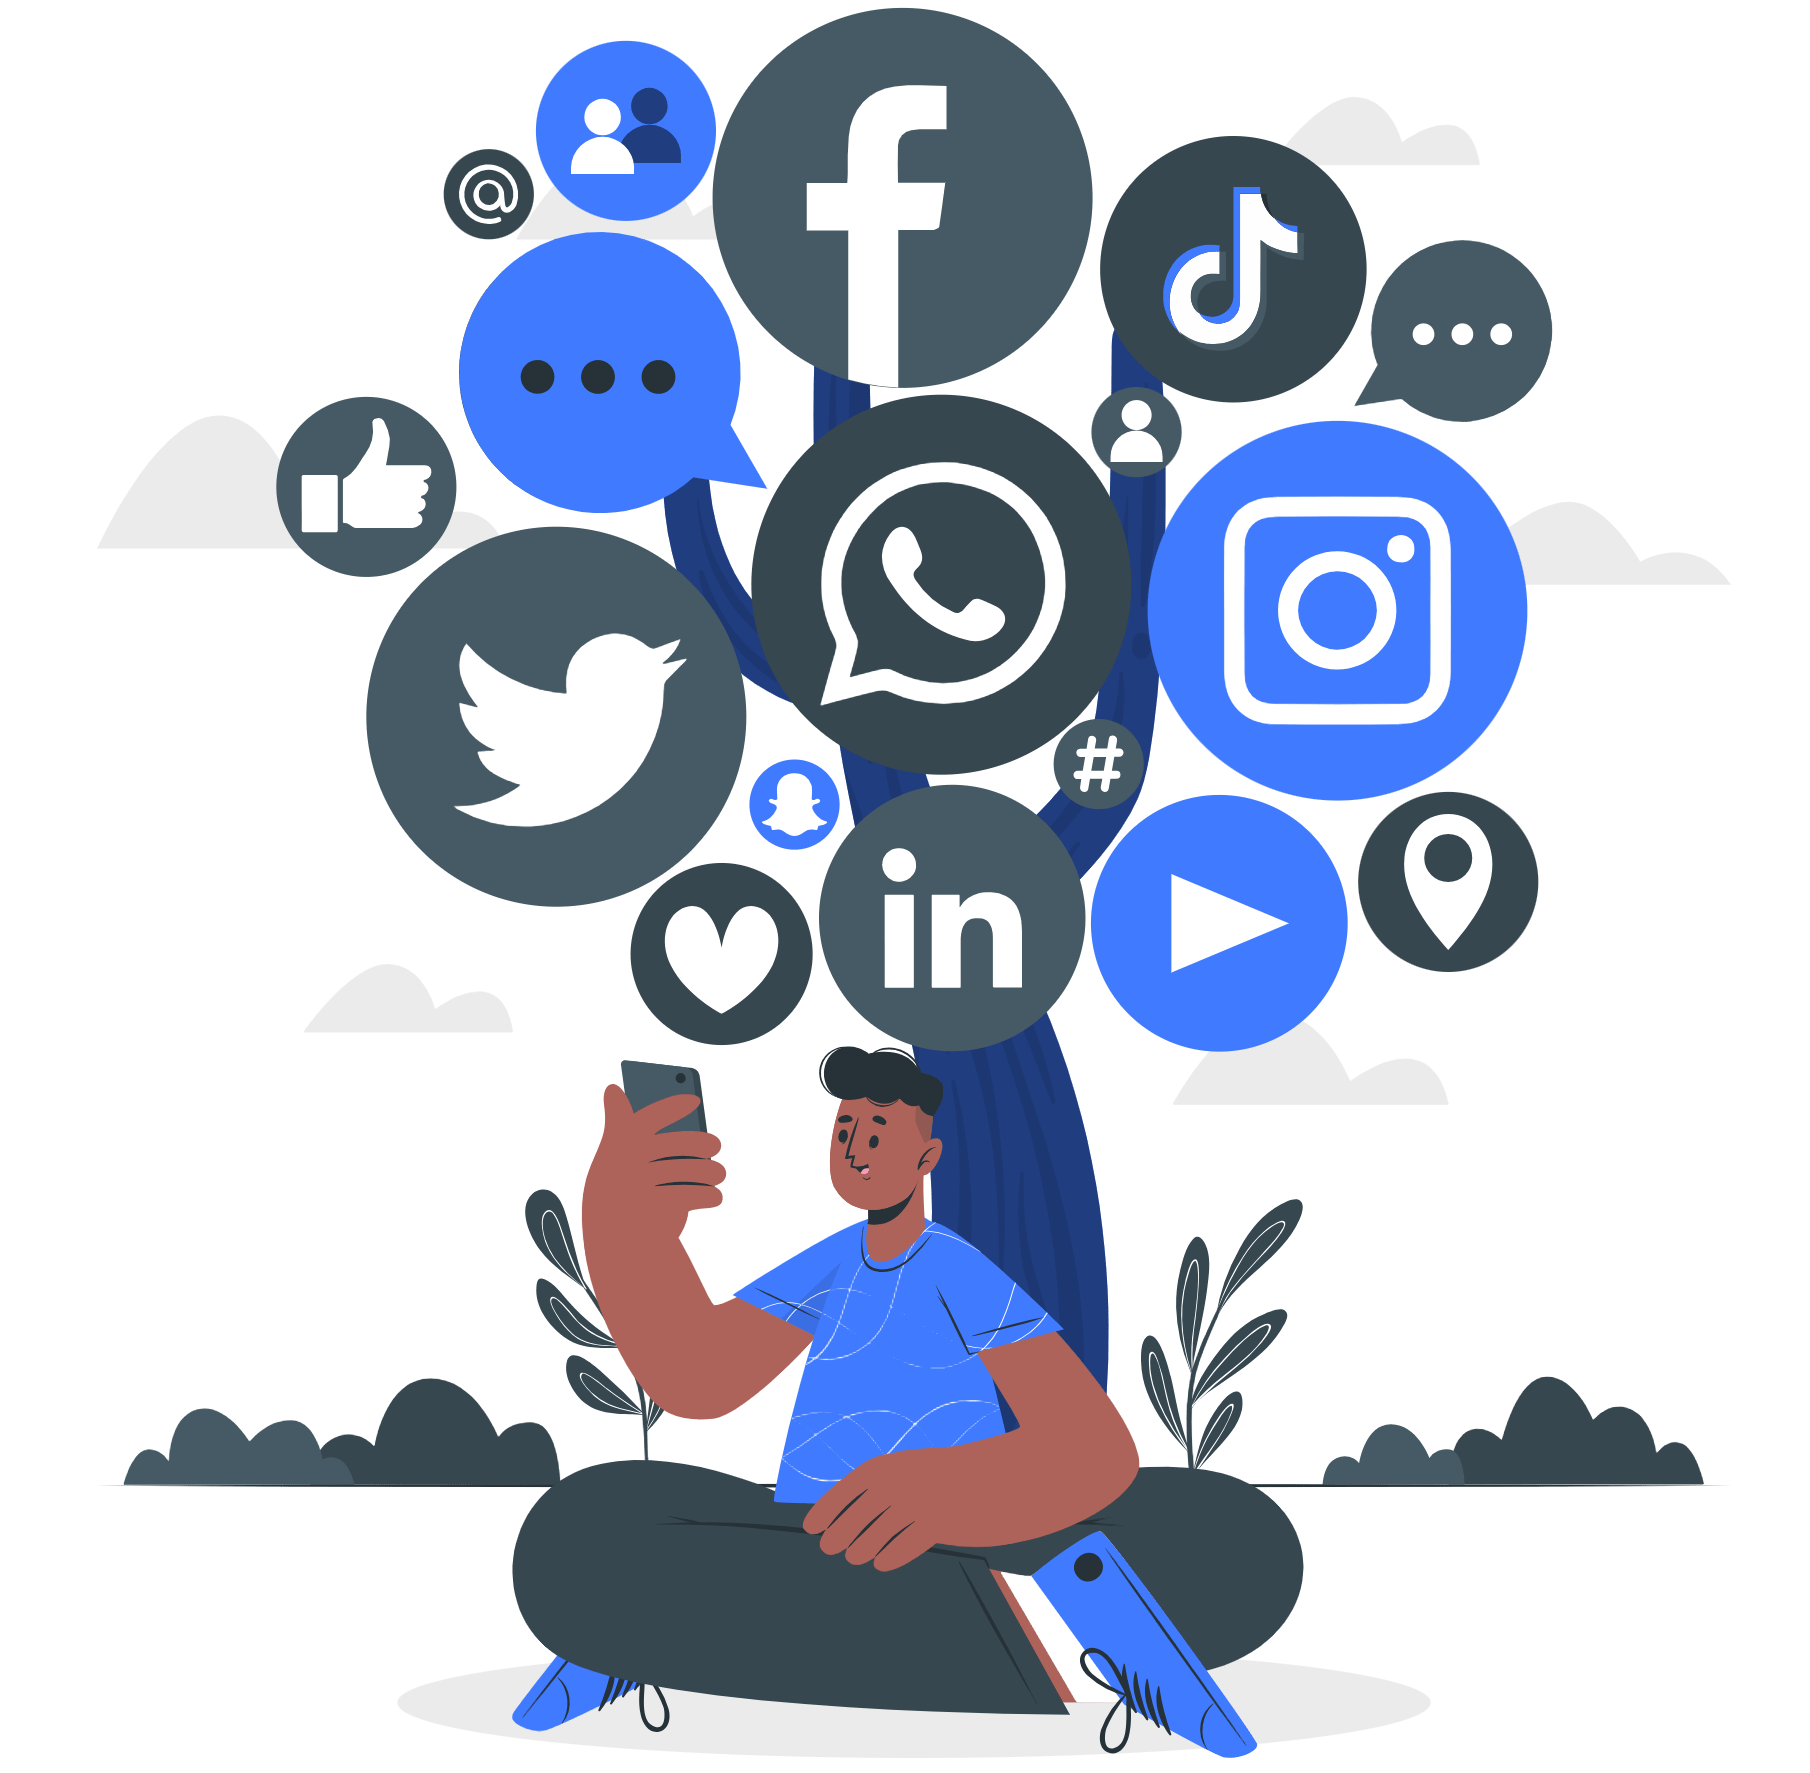 Social Media Optimization